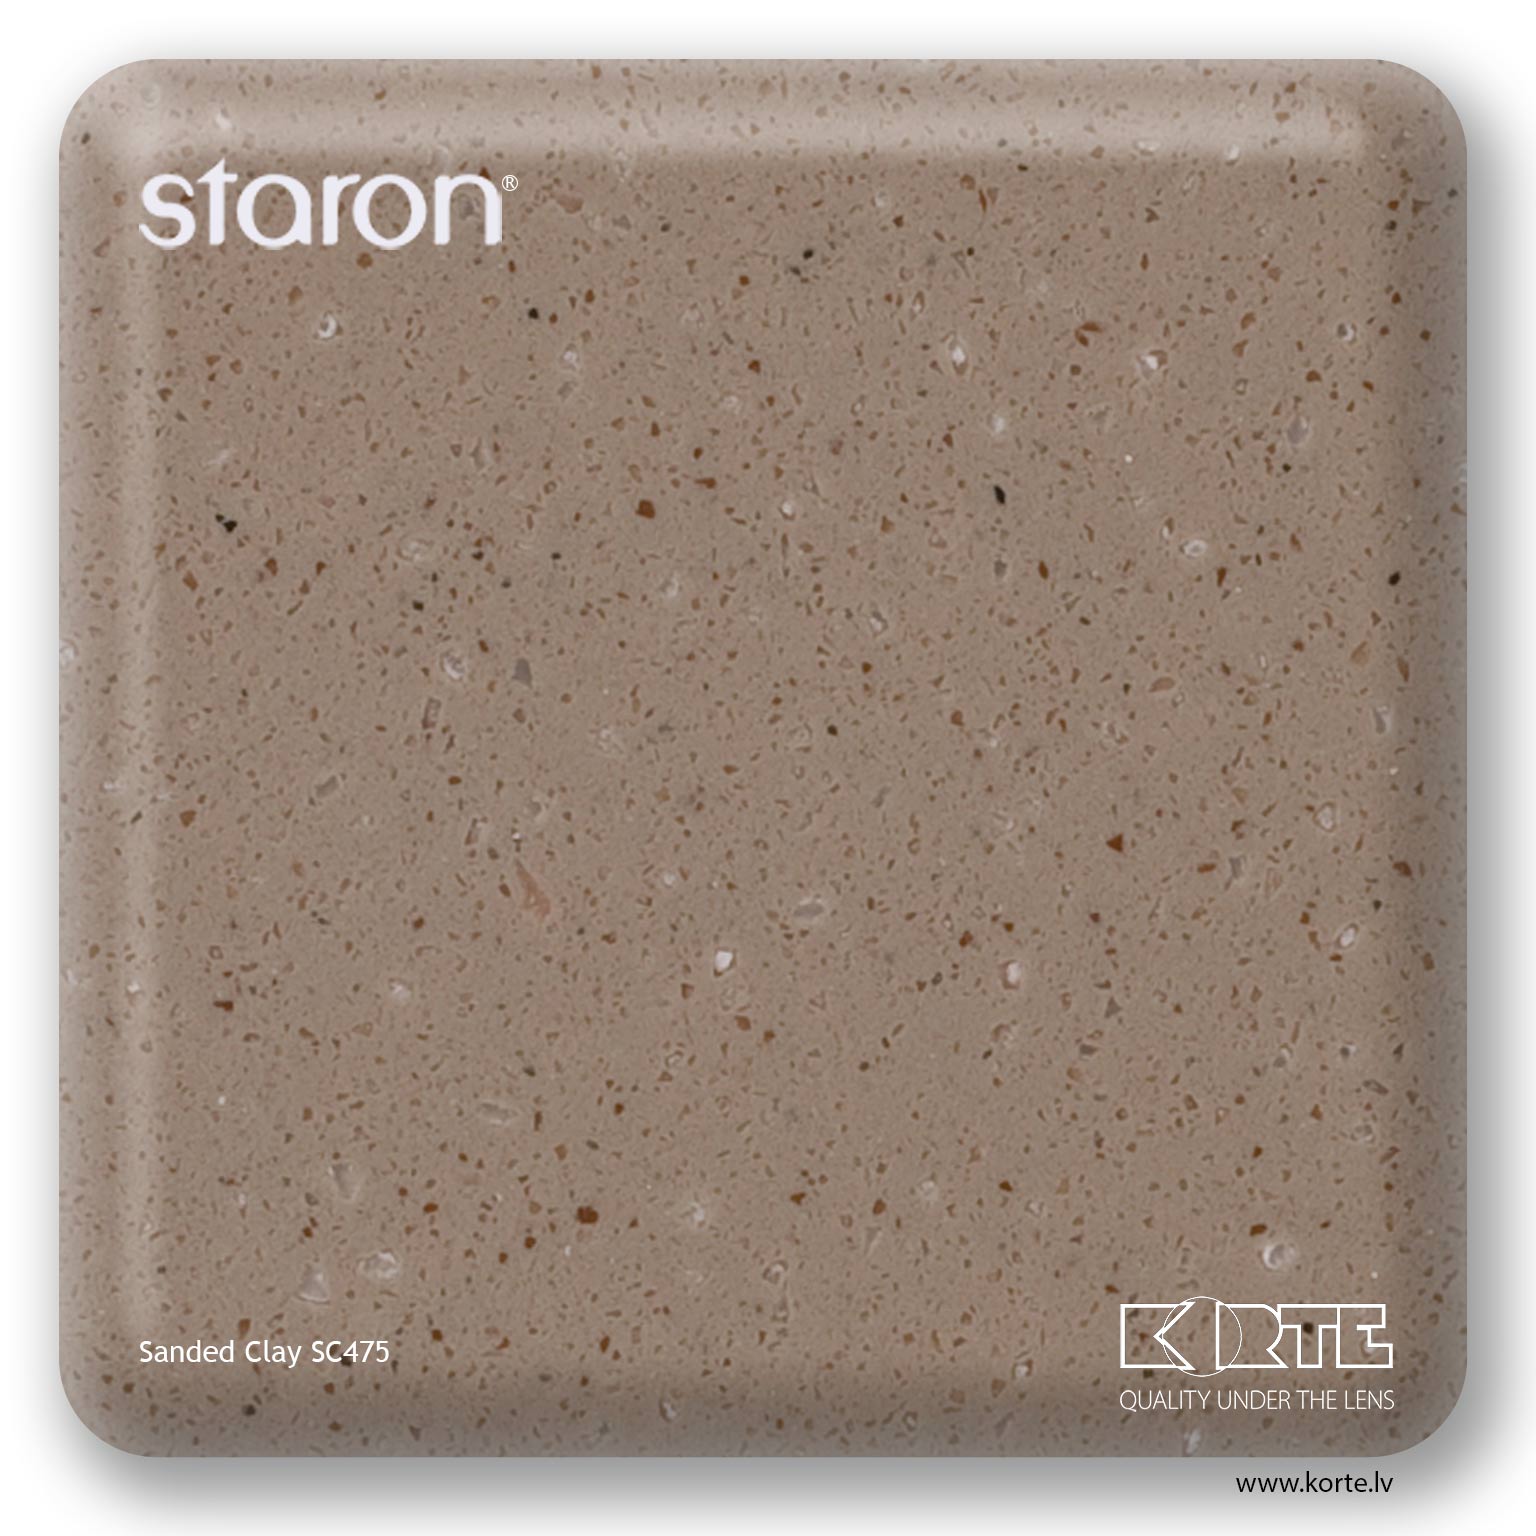 Staron Sanded Clay SC475